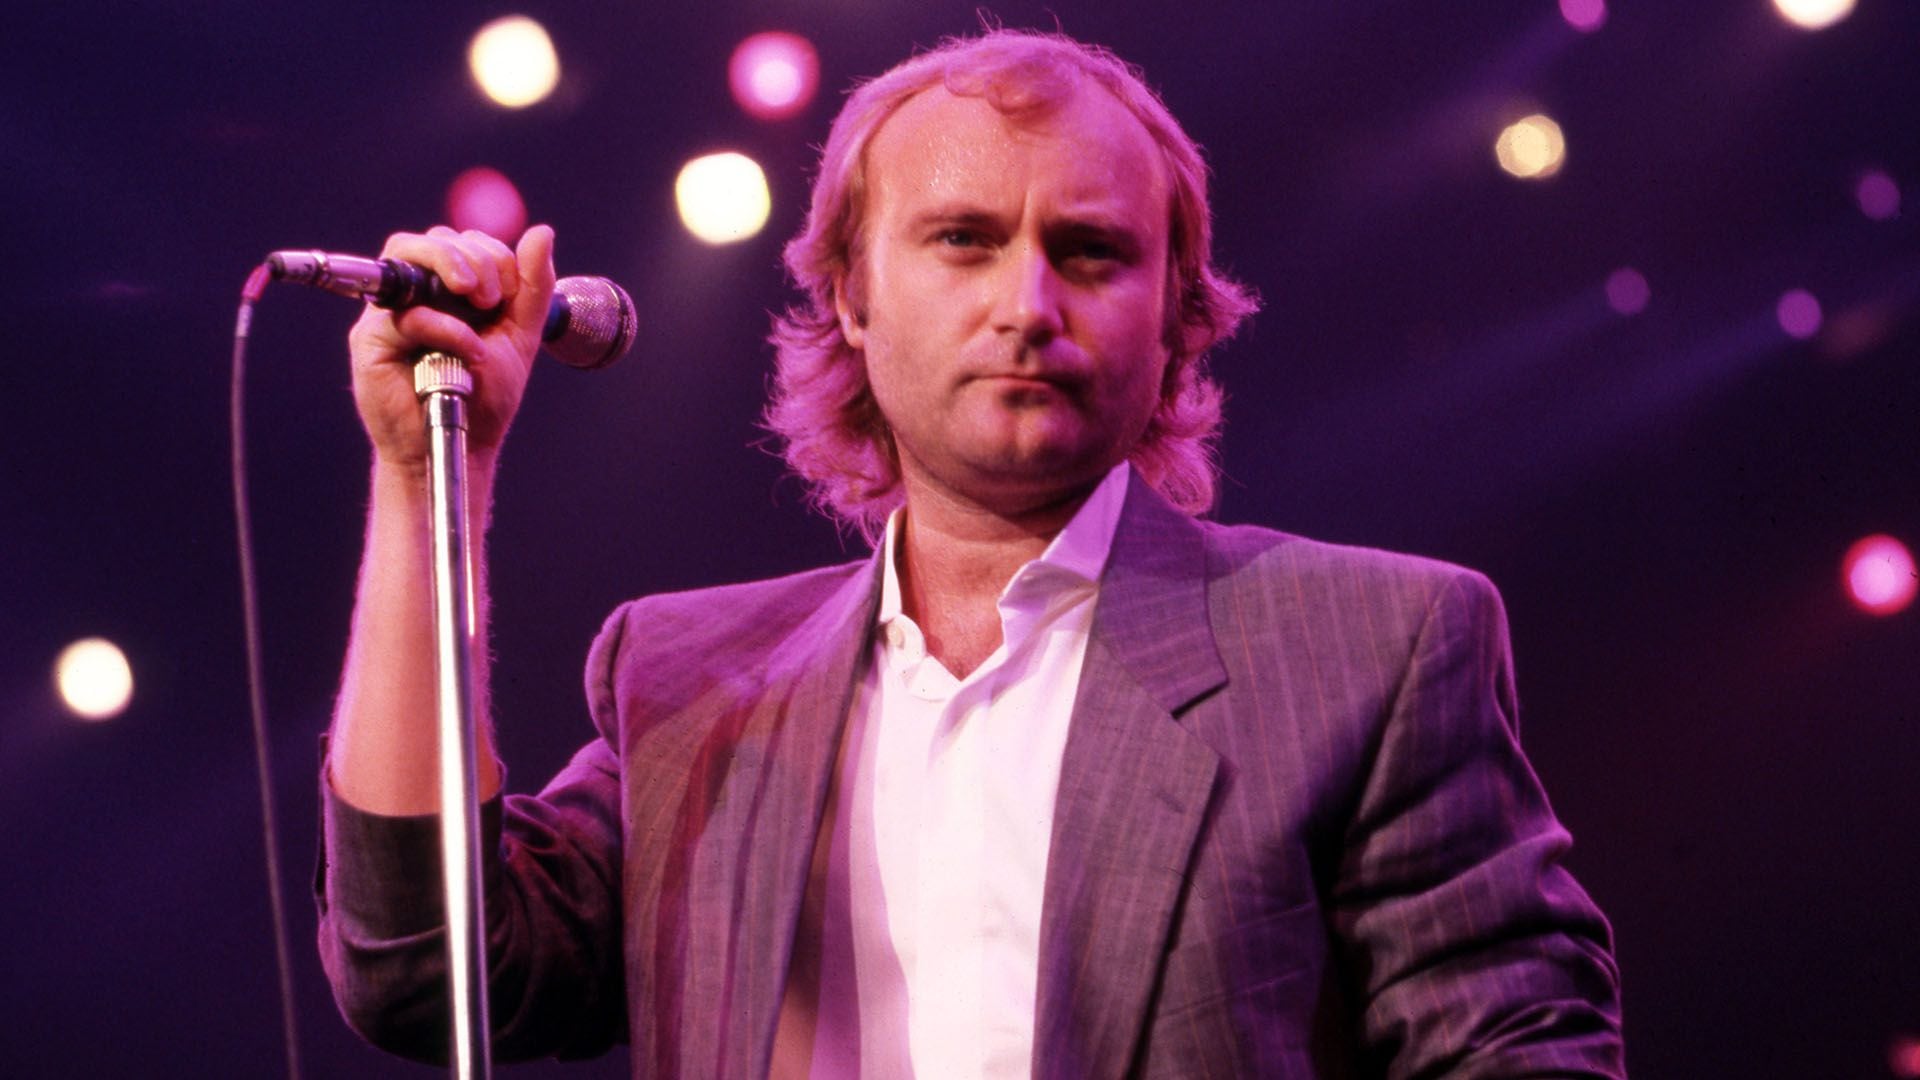 Phil Collins habría escrito "In The Air Tonight" para hablar de una terrible noche en la que observó como una persona moría ahogada  
(Photo by Ross Marino/Getty Images)